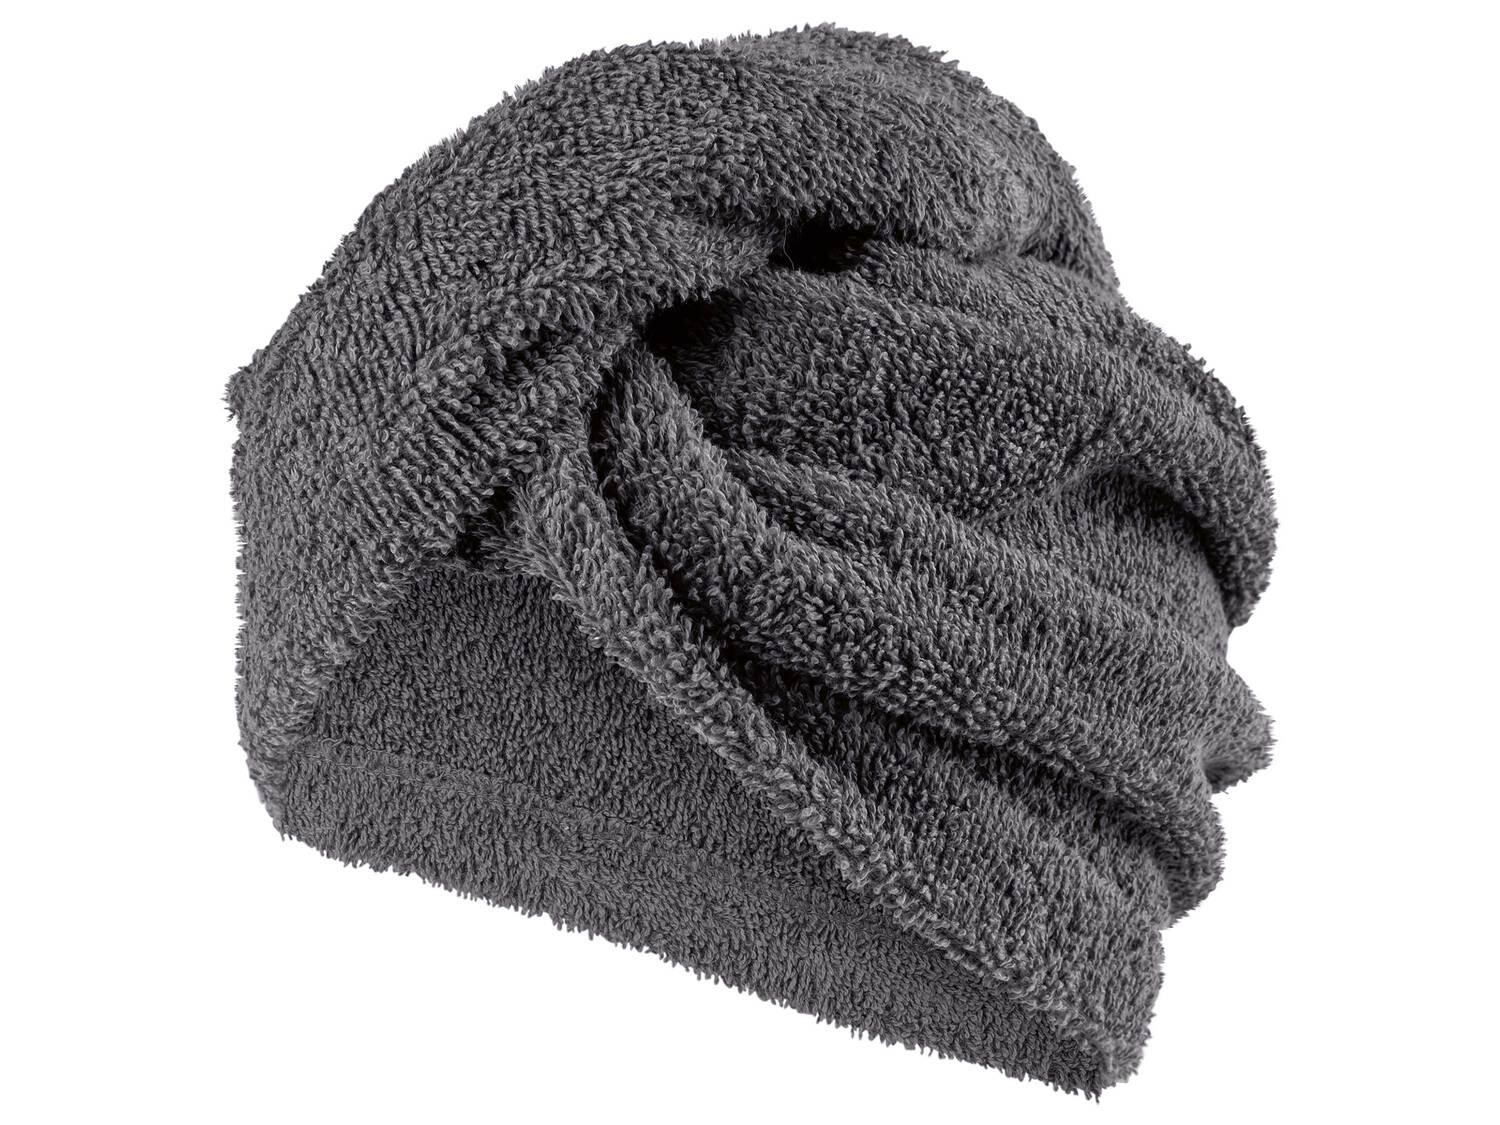 Serviette turban , le prix 3.99 &#8364; 
- Env. 24 x 61 cm
- Ex. 100 % coton
- ...